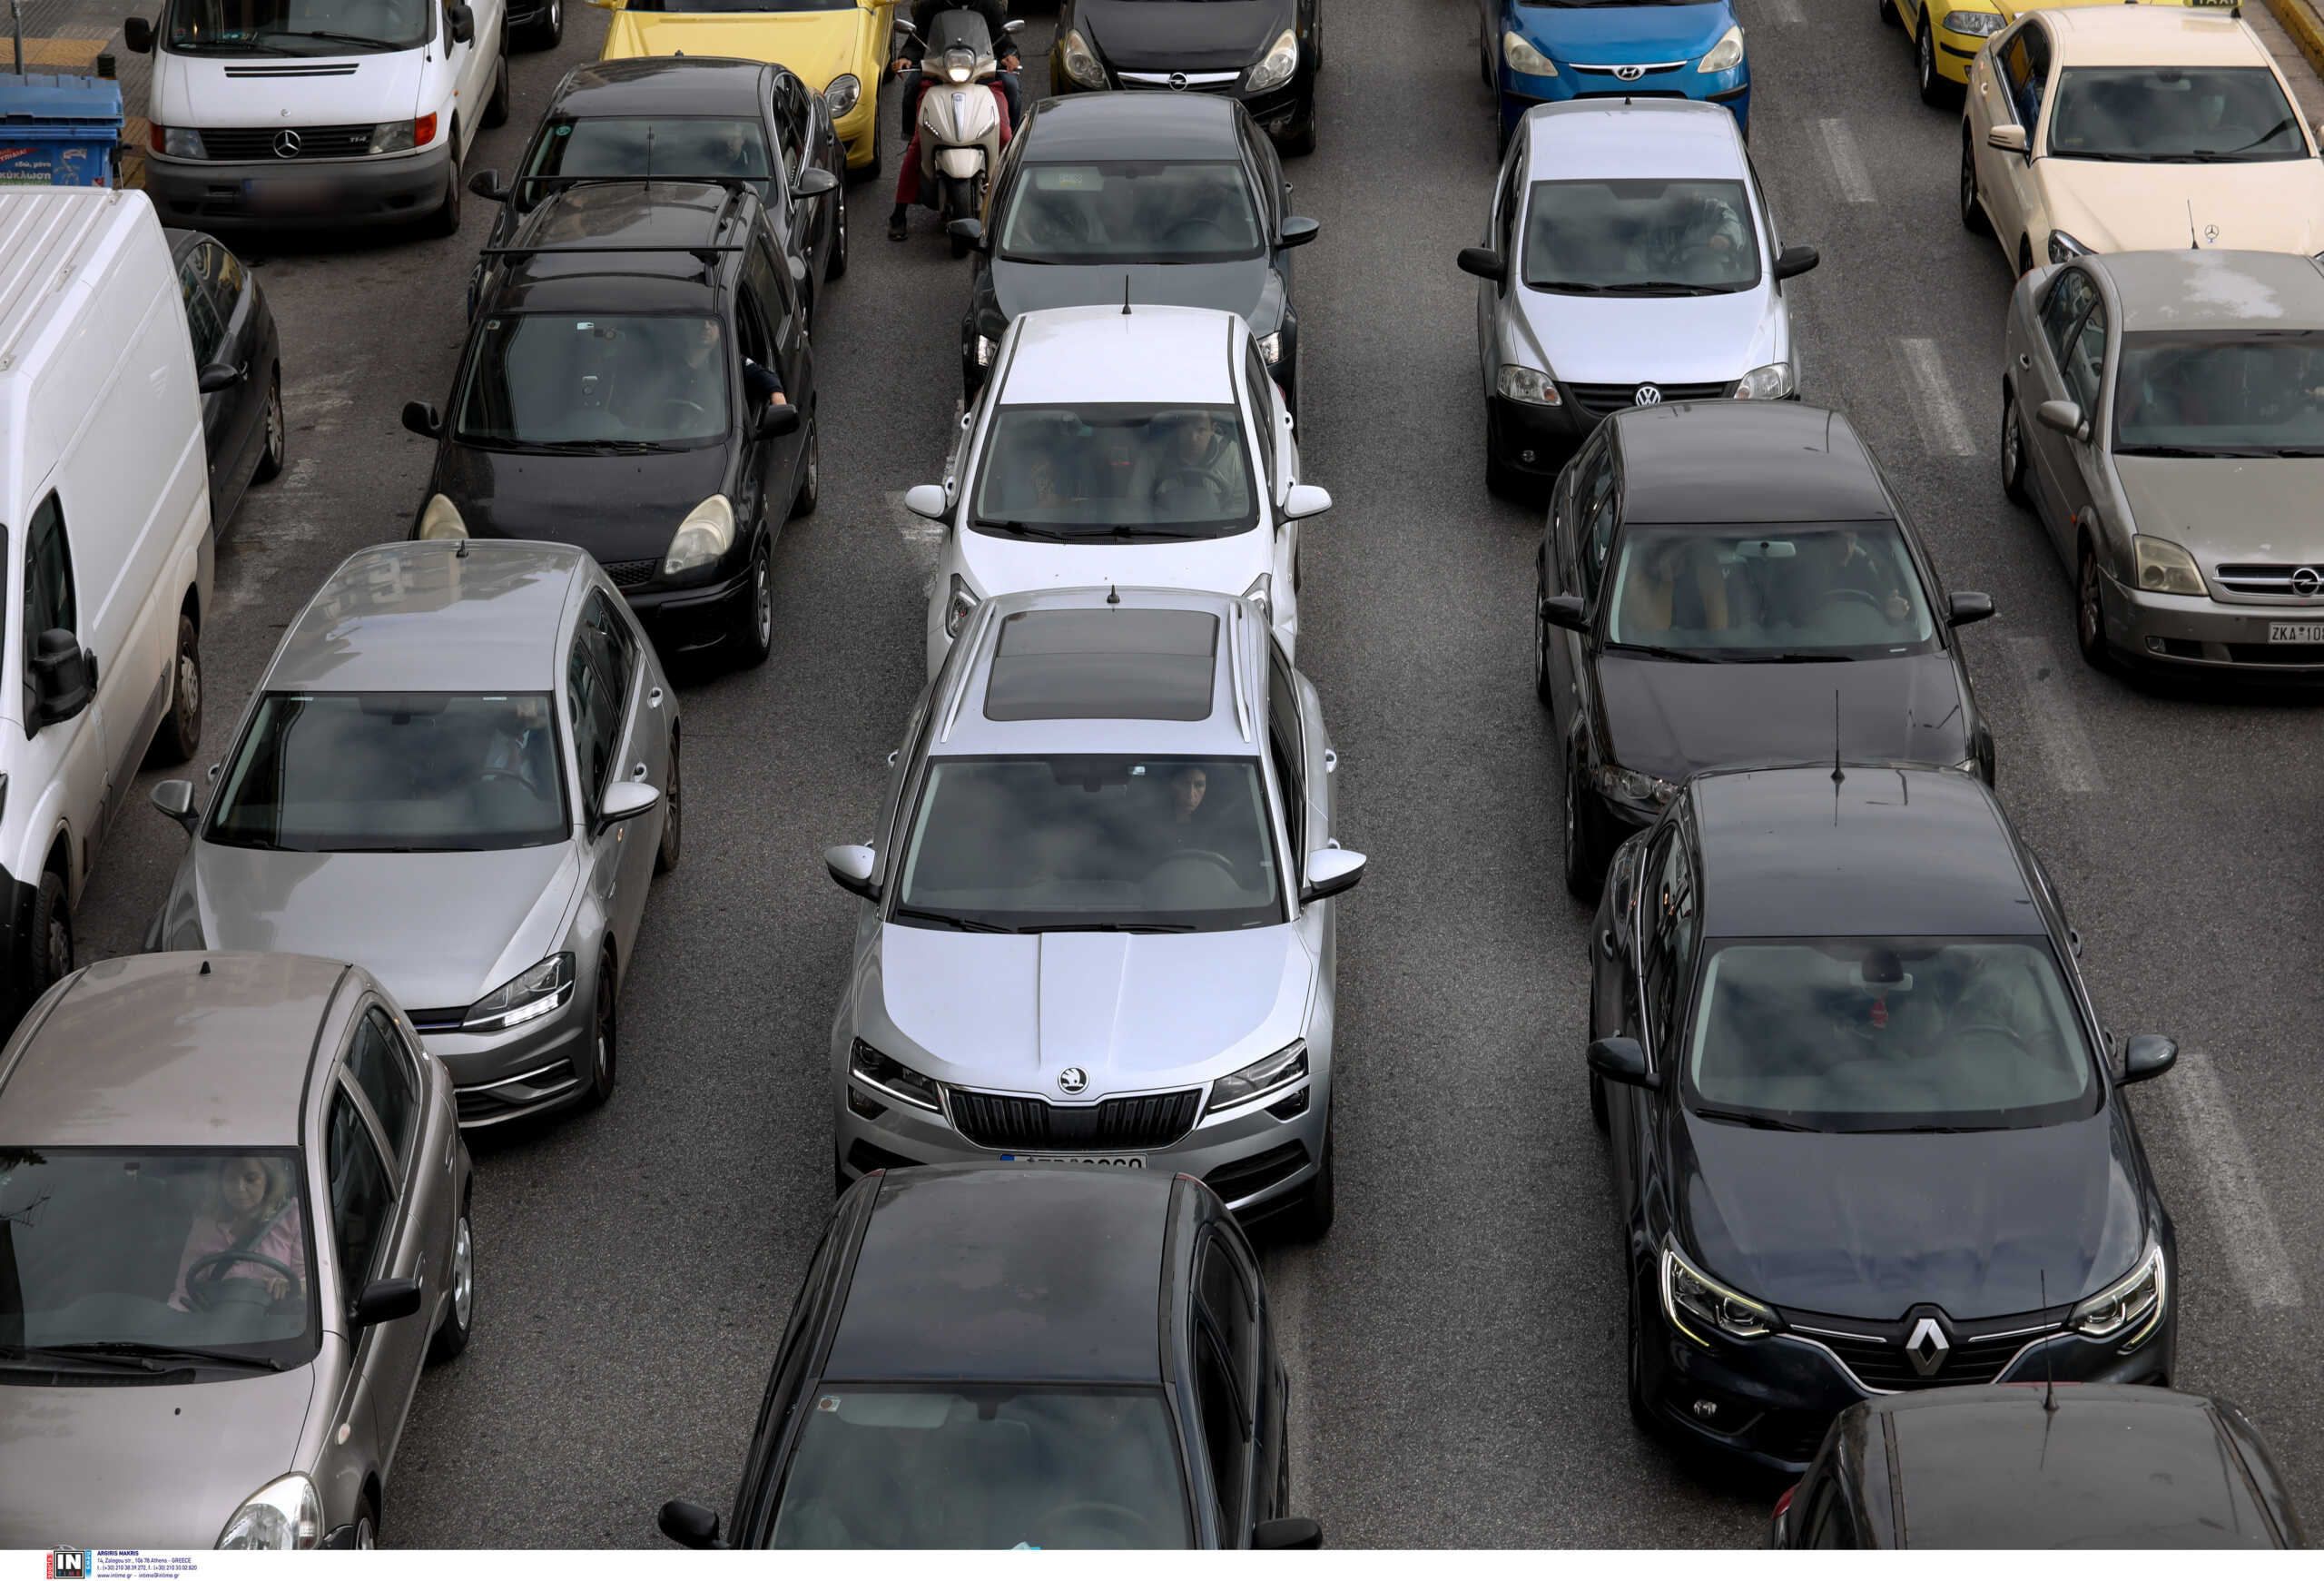 Μάντρα αυτοκίνητων δέχεται καταγγελίες για απάτη με προκαταβολές – 150 τα «θύματά» της